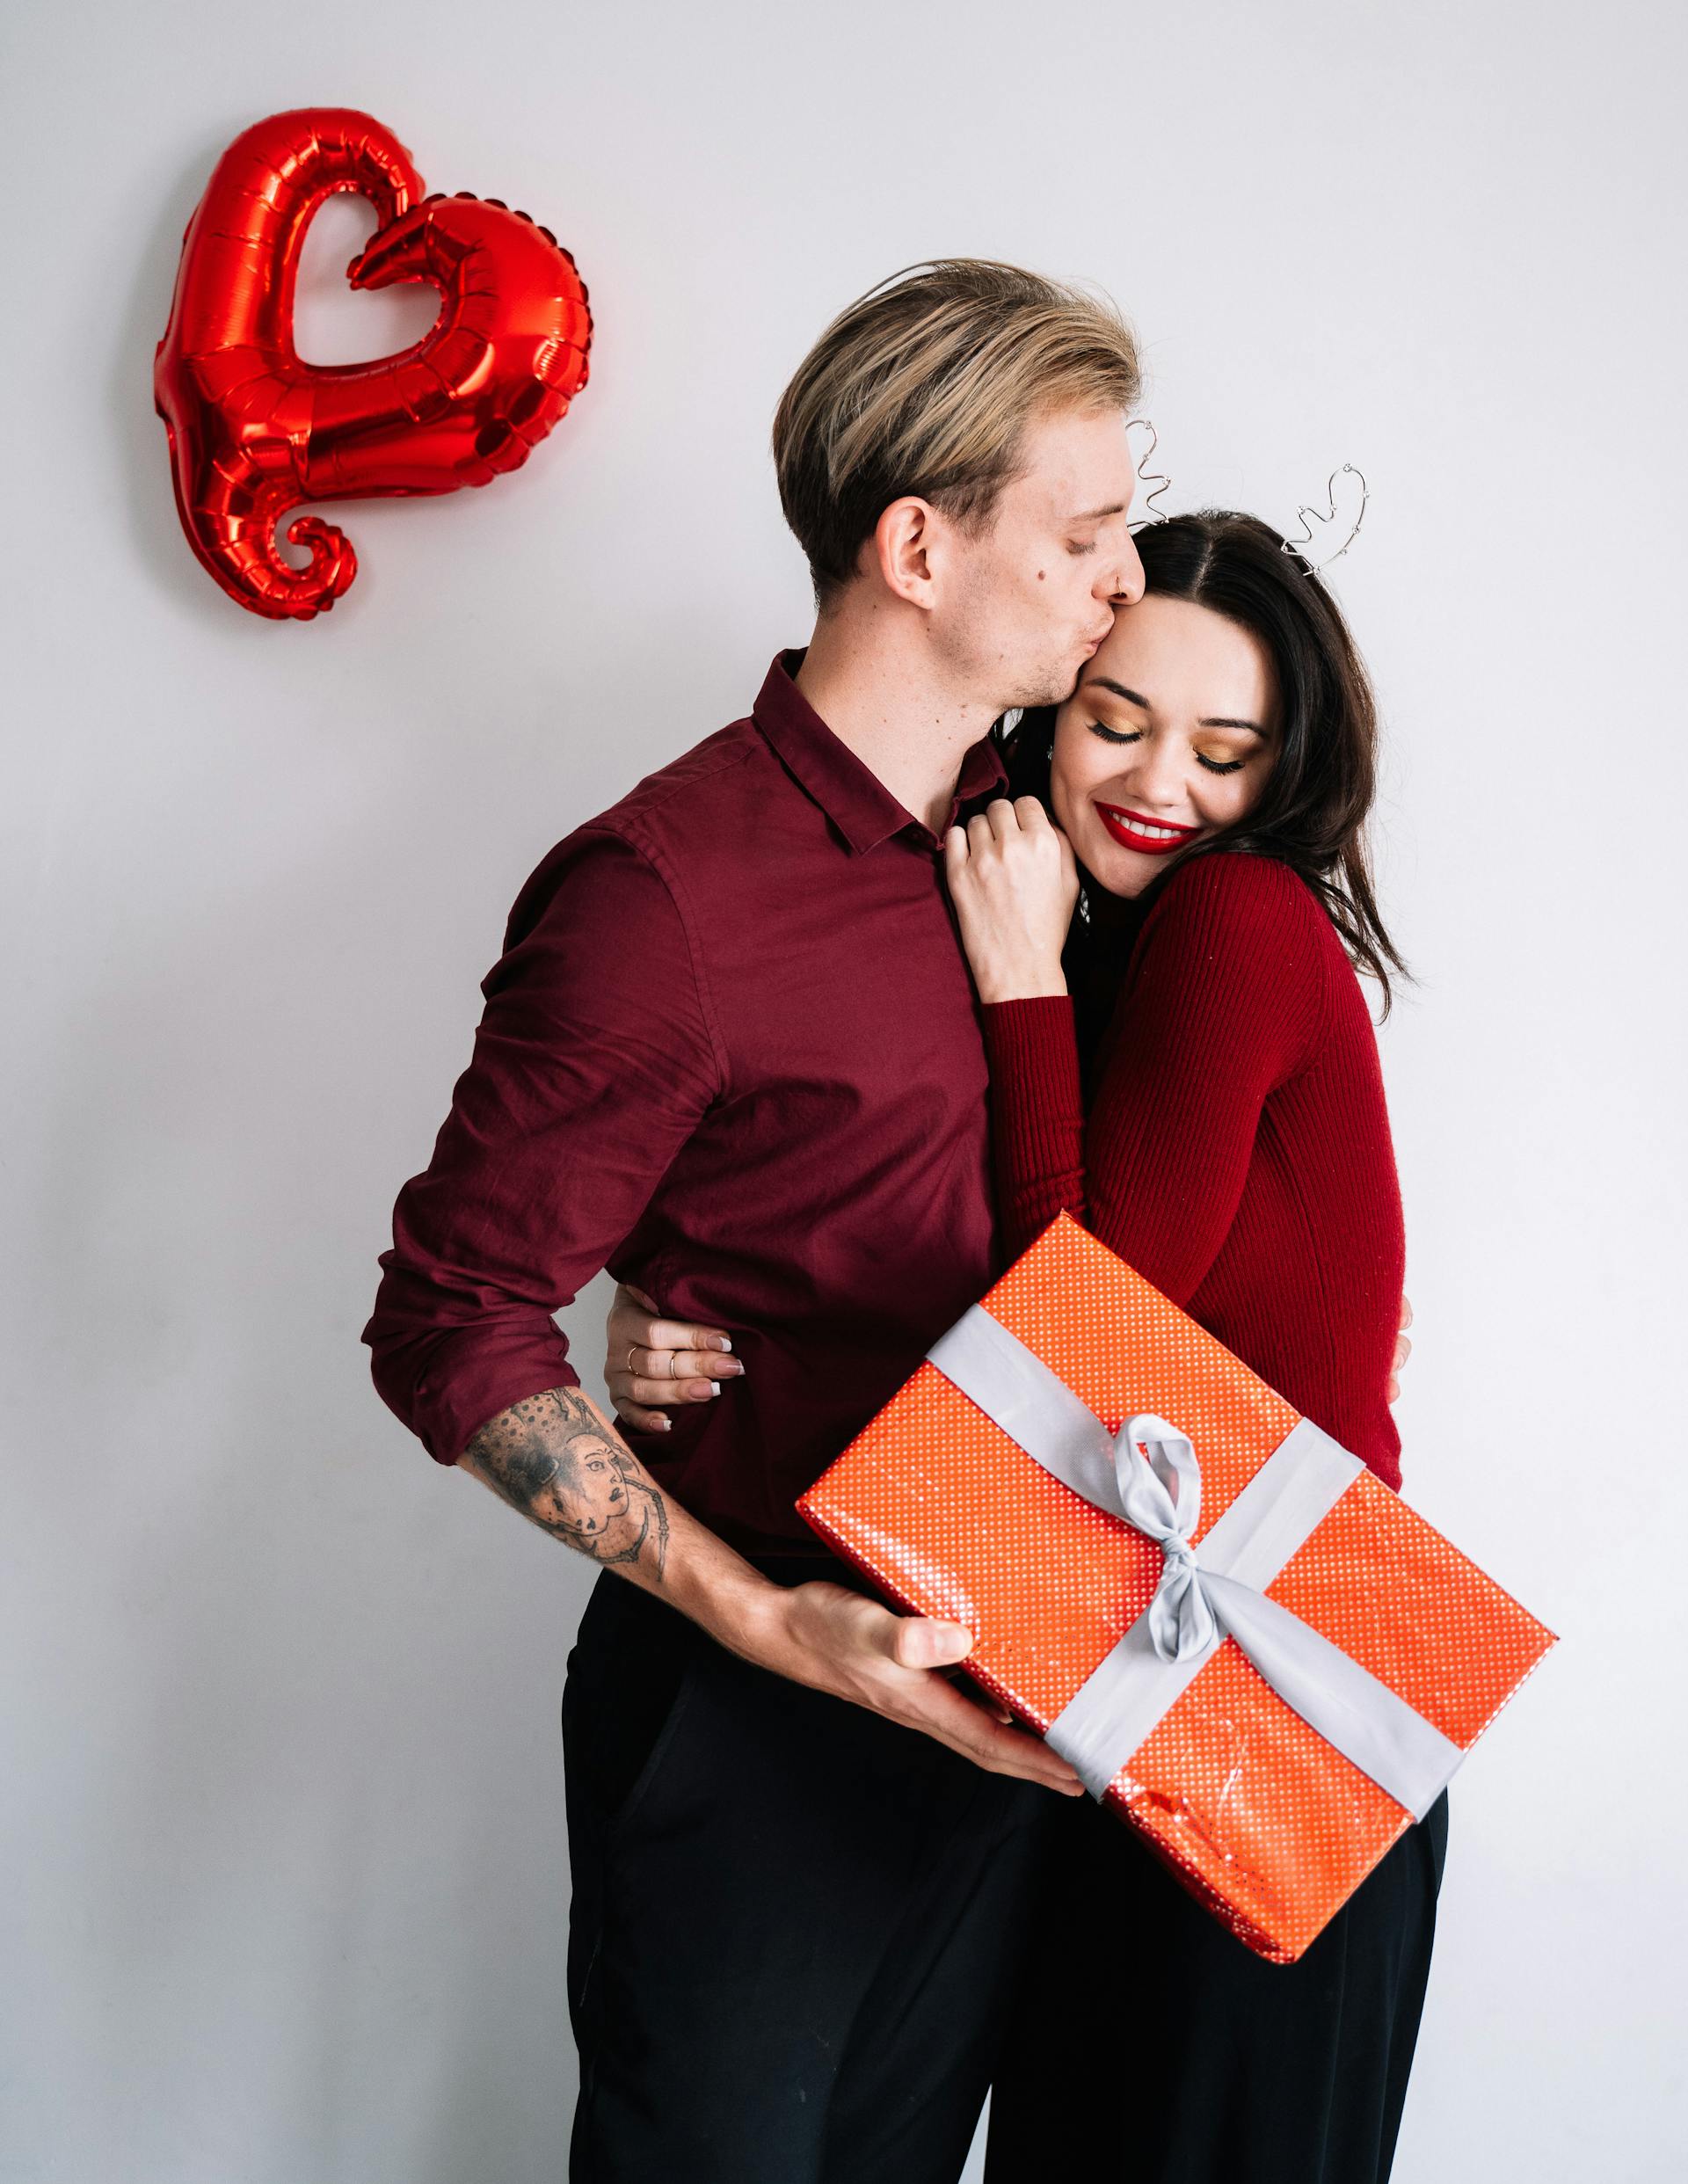 Ein Mann küsst eine Frau, während er eine Geschenkbox hält | Quelle: Pexels